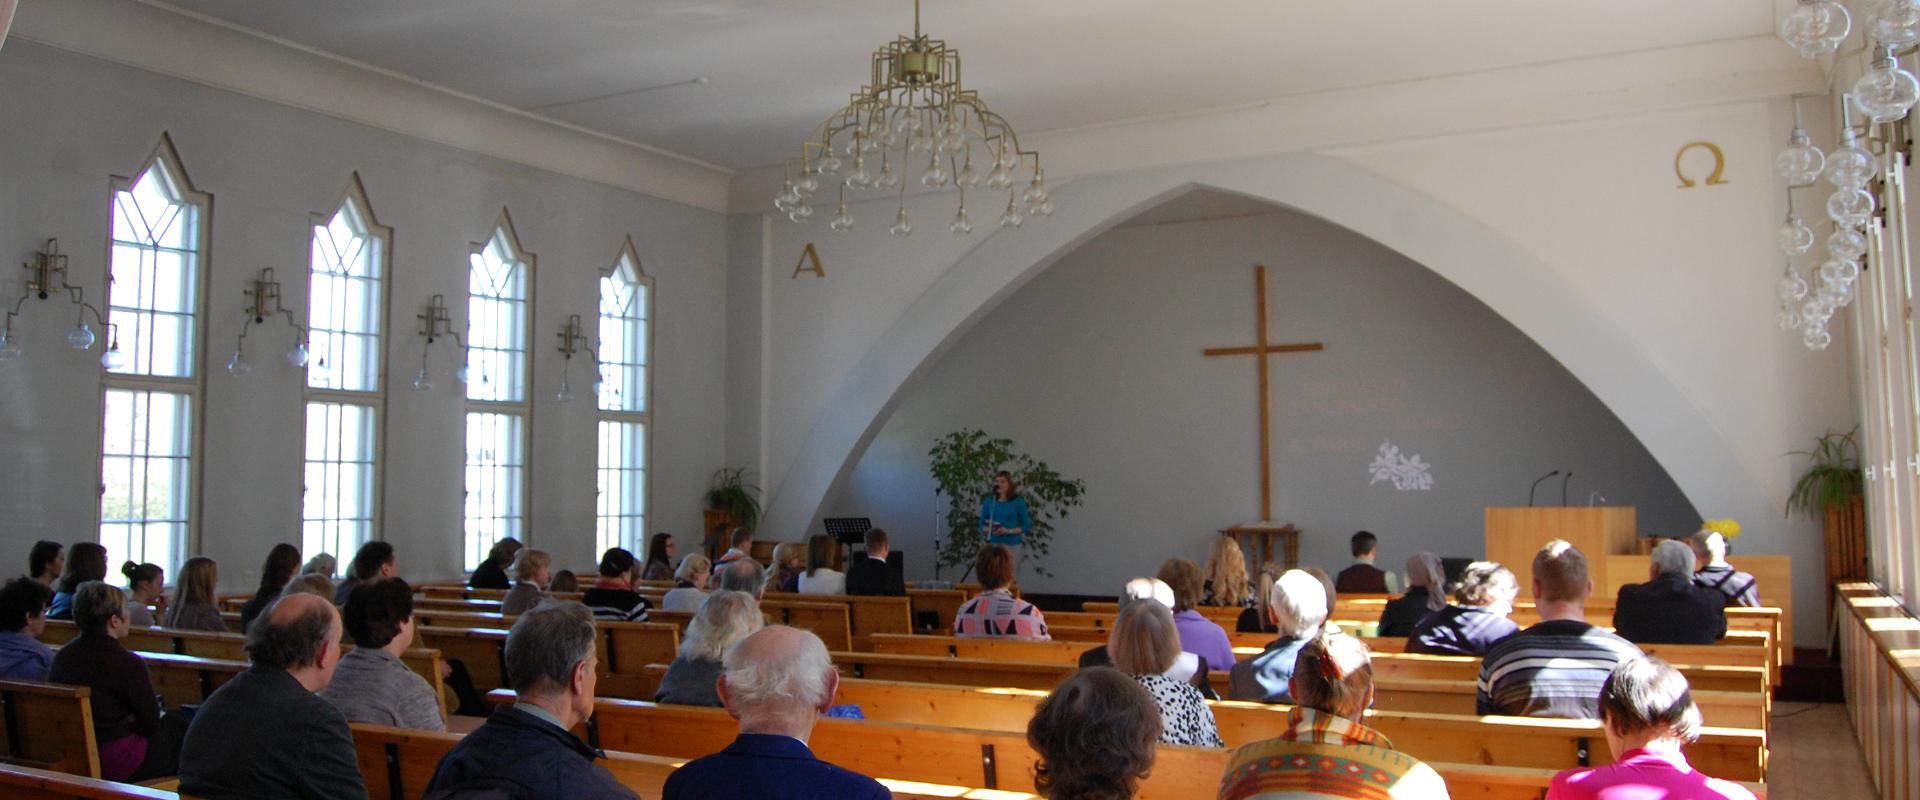 Tartu Adventist Church of the Union of Adventist Churches in Estonia